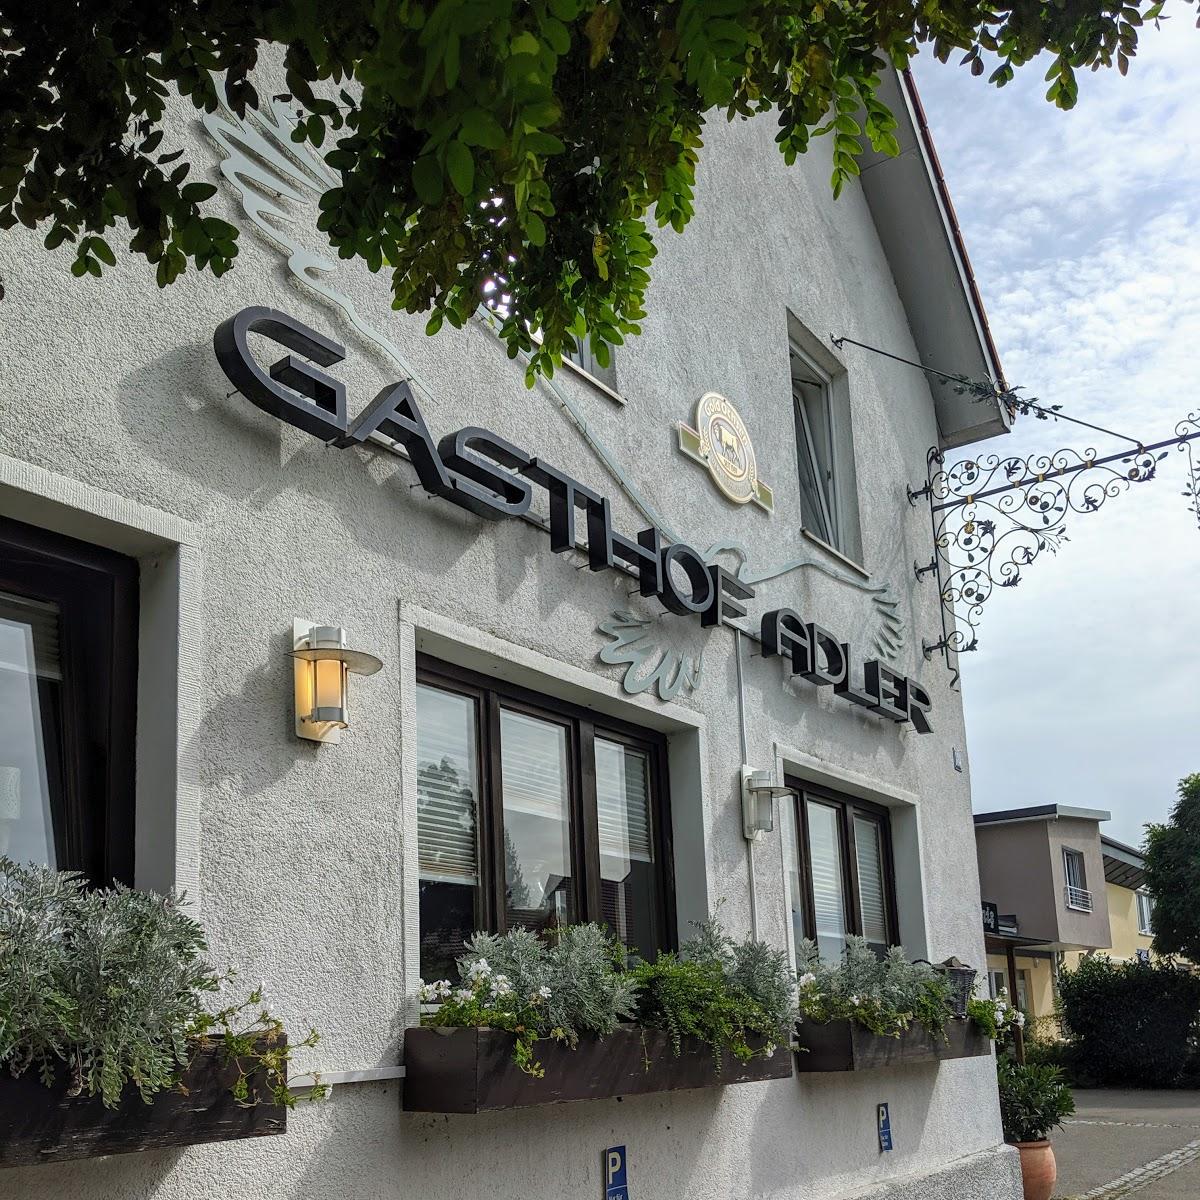 Restaurant "Gasthof Adler Ludwigsfeld | Biergarten - Deutsche Küche - Veranstaltungsort" in  Neu-Ulm